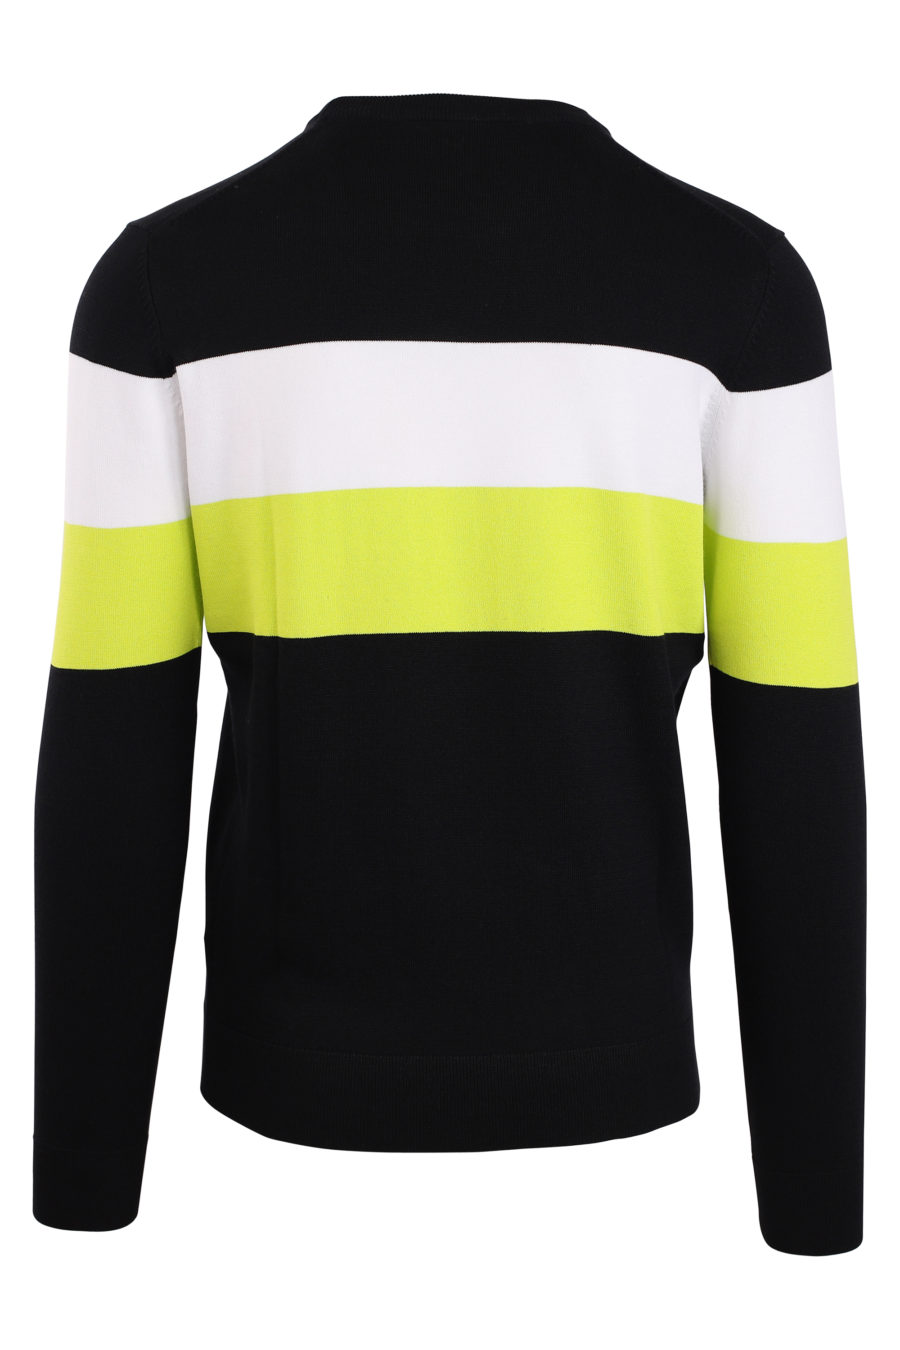 Black sweatshirt with white and yellow stripe - IMG 0923